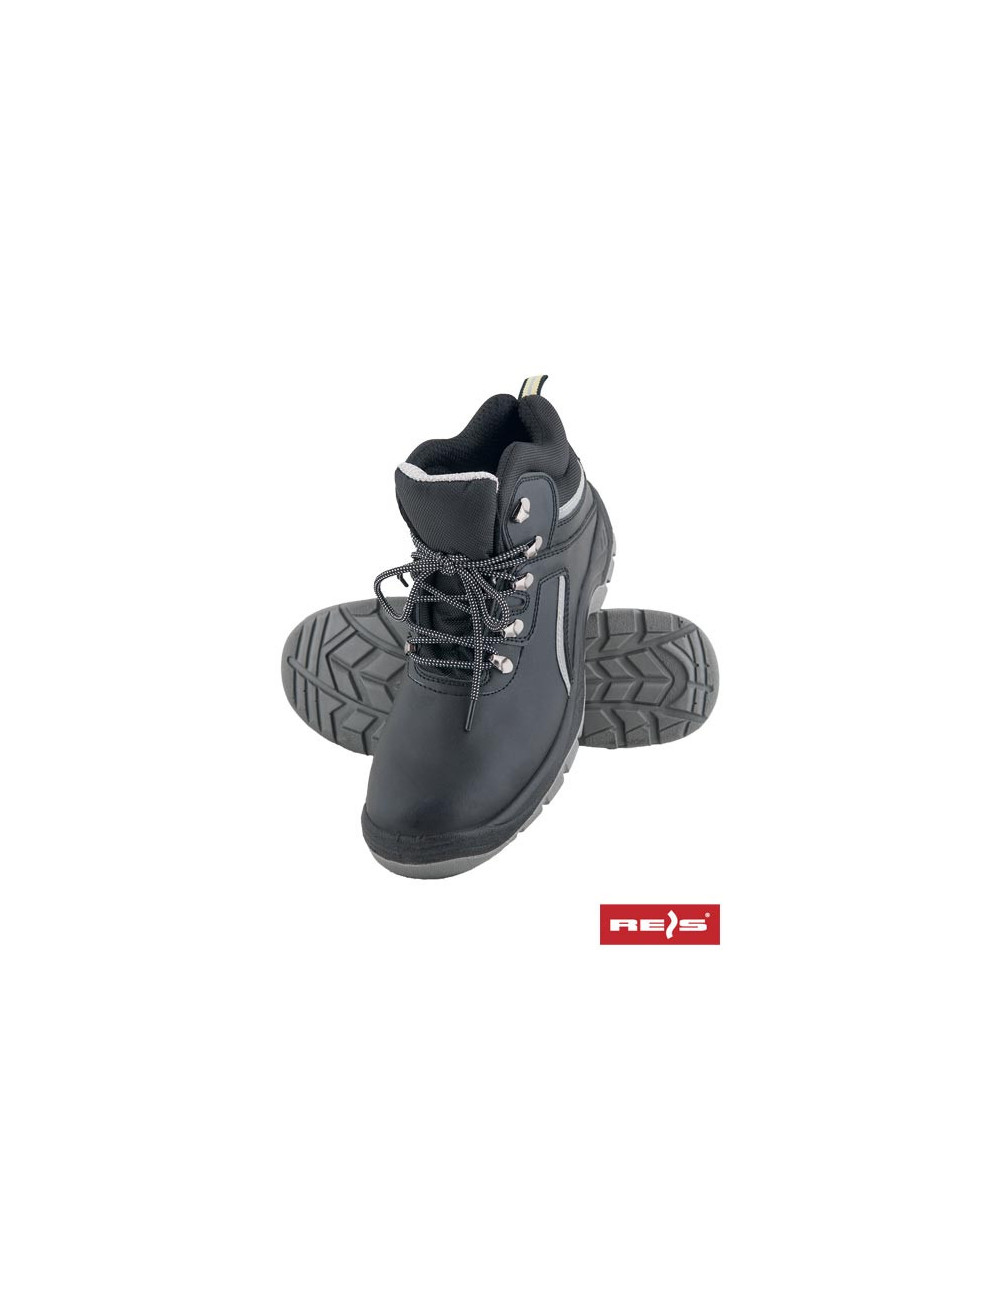 Safety boots bs black-grey Reis Brcpolreis